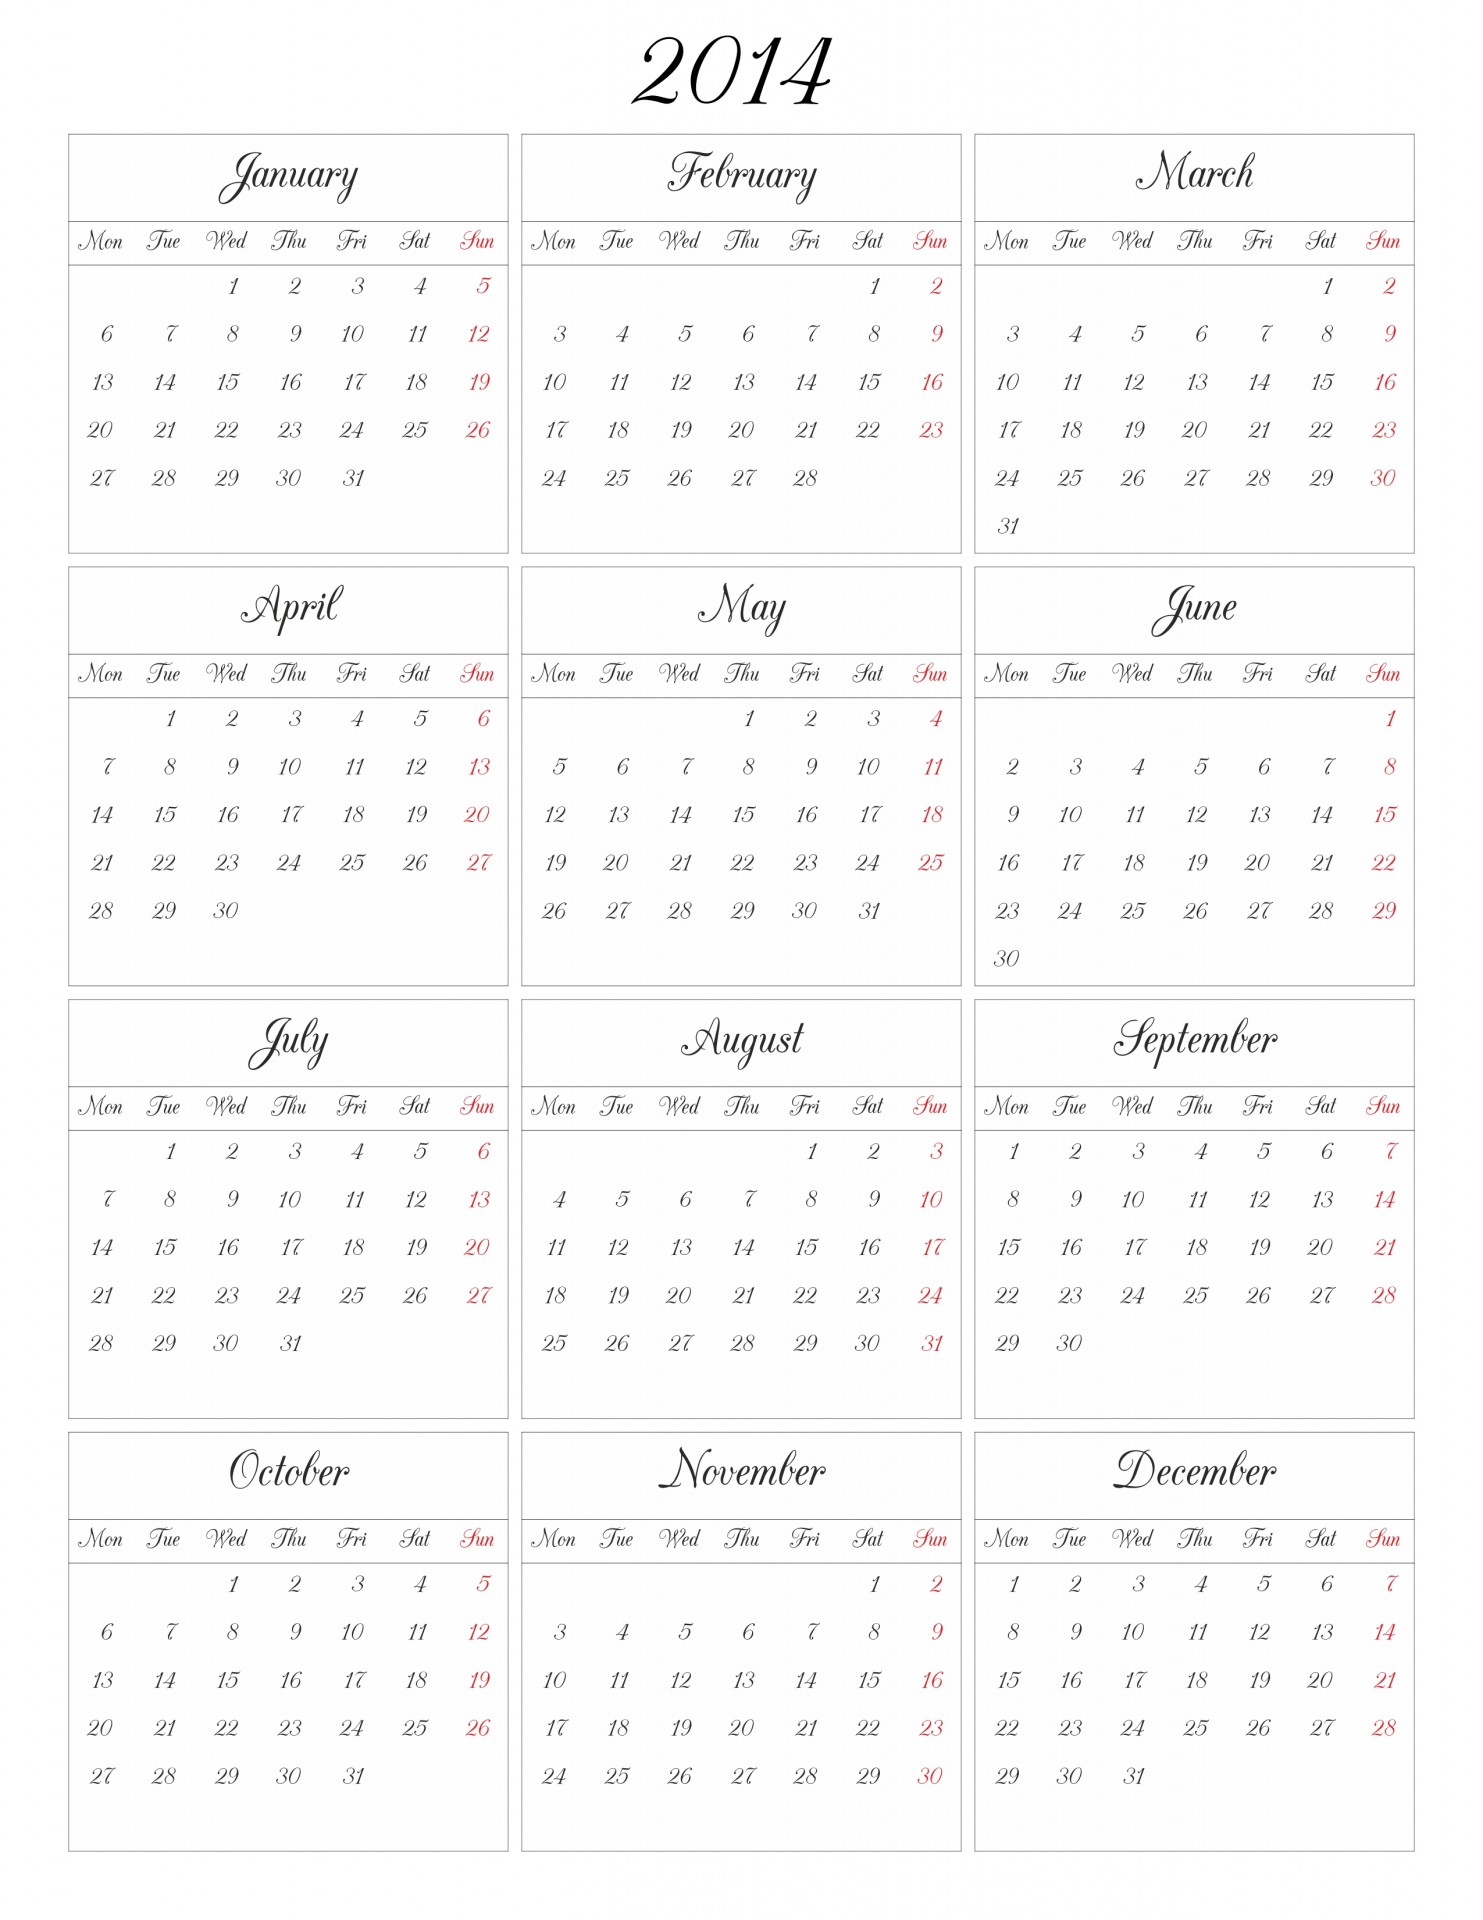 La grille de calendrier pour 2014